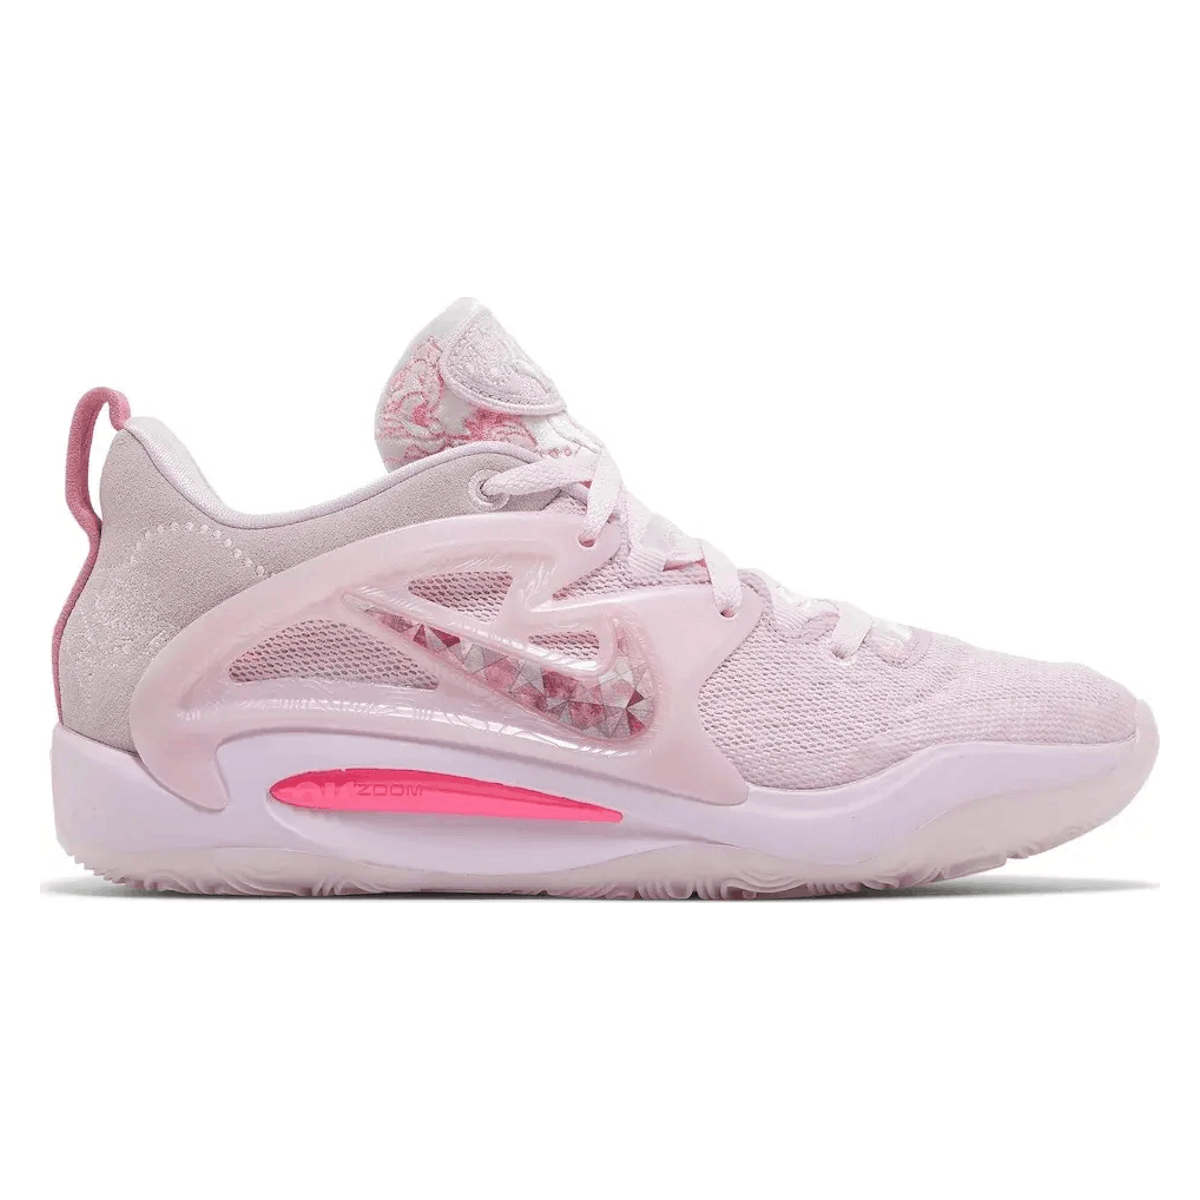 Nike KD15 "Pink Foam"